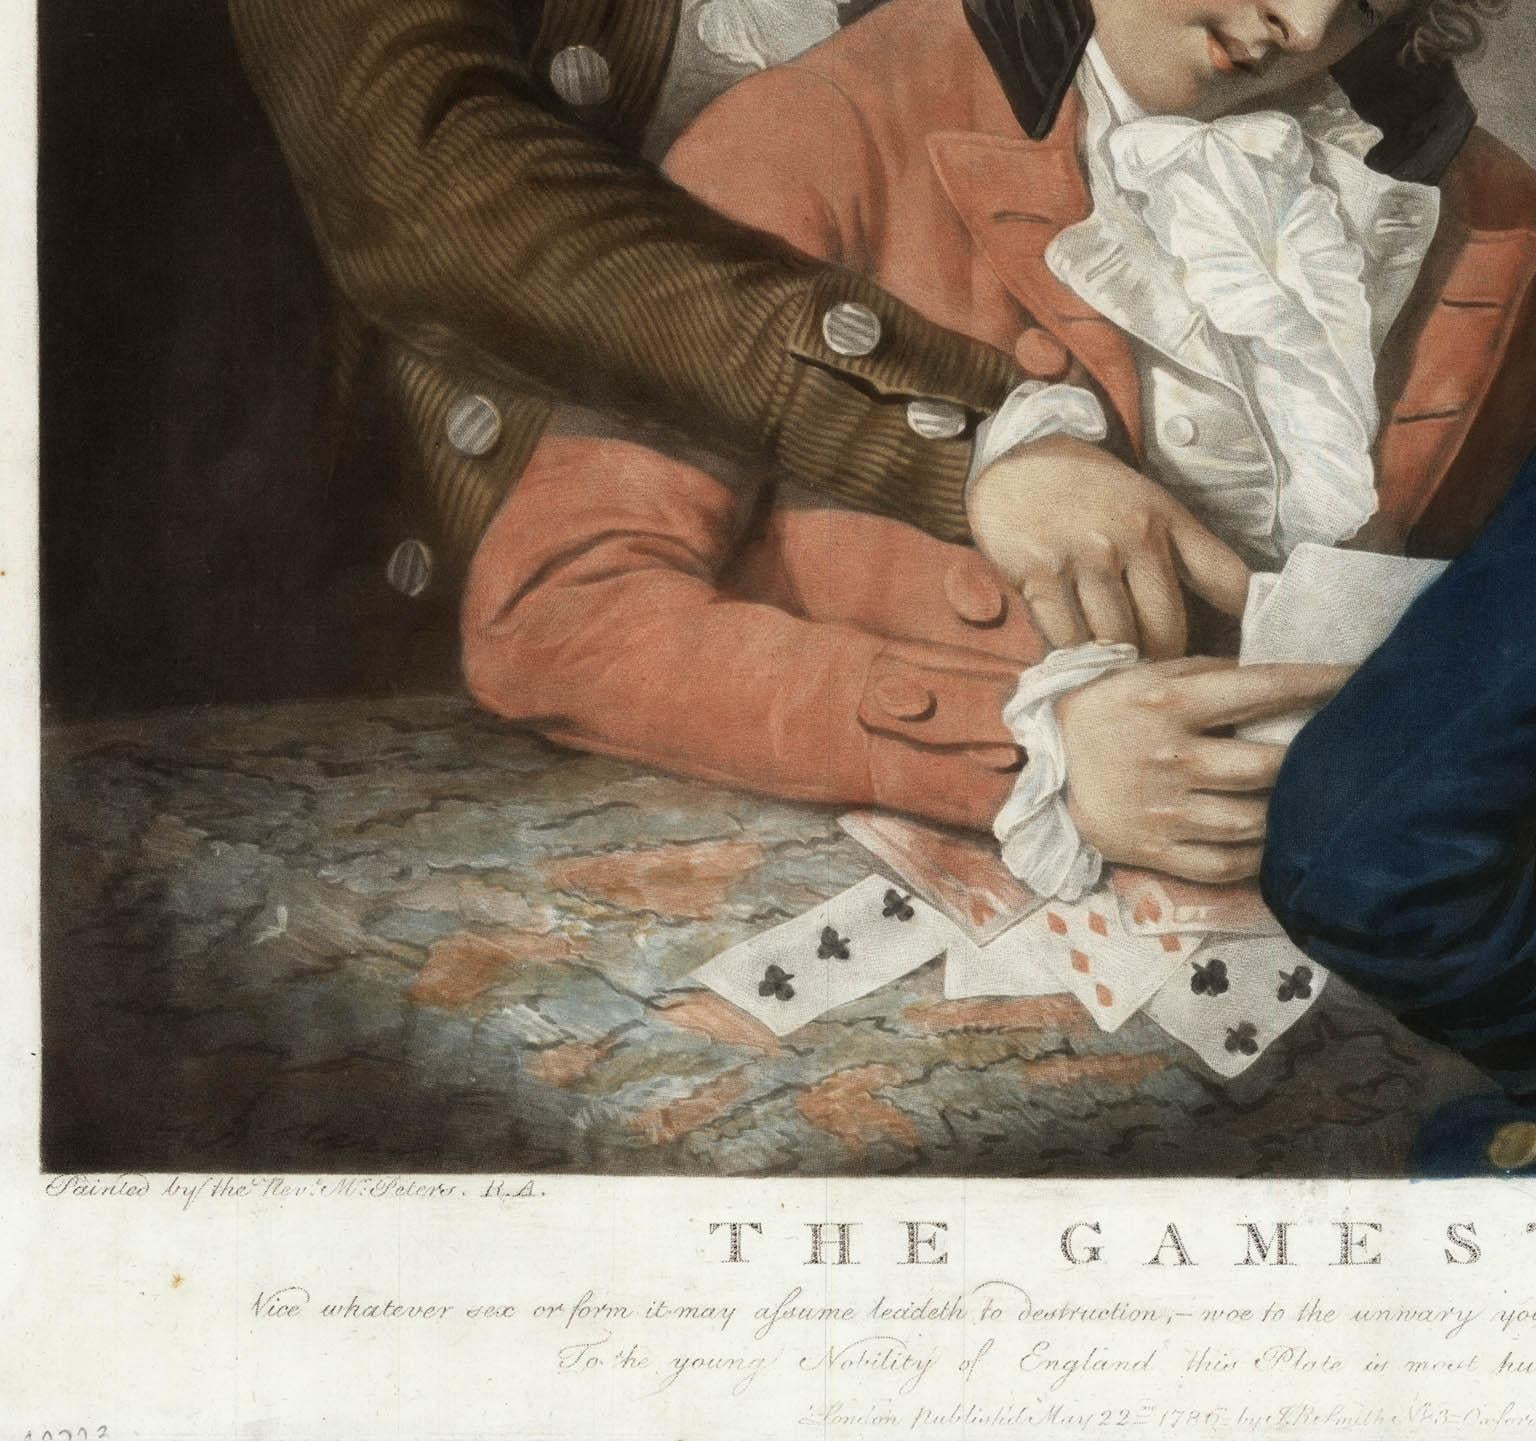 LES JOUEURS et LE DONNEUR DE FORTEUNE.

Une merveilleuse paire de gravures mezzotintes imprimées en couleur d'après des peintures du Rév. Matthew William Peters, R.A.   Matthew William Peters (1742 - 20 mars 1814) était un portraitiste et peintre de